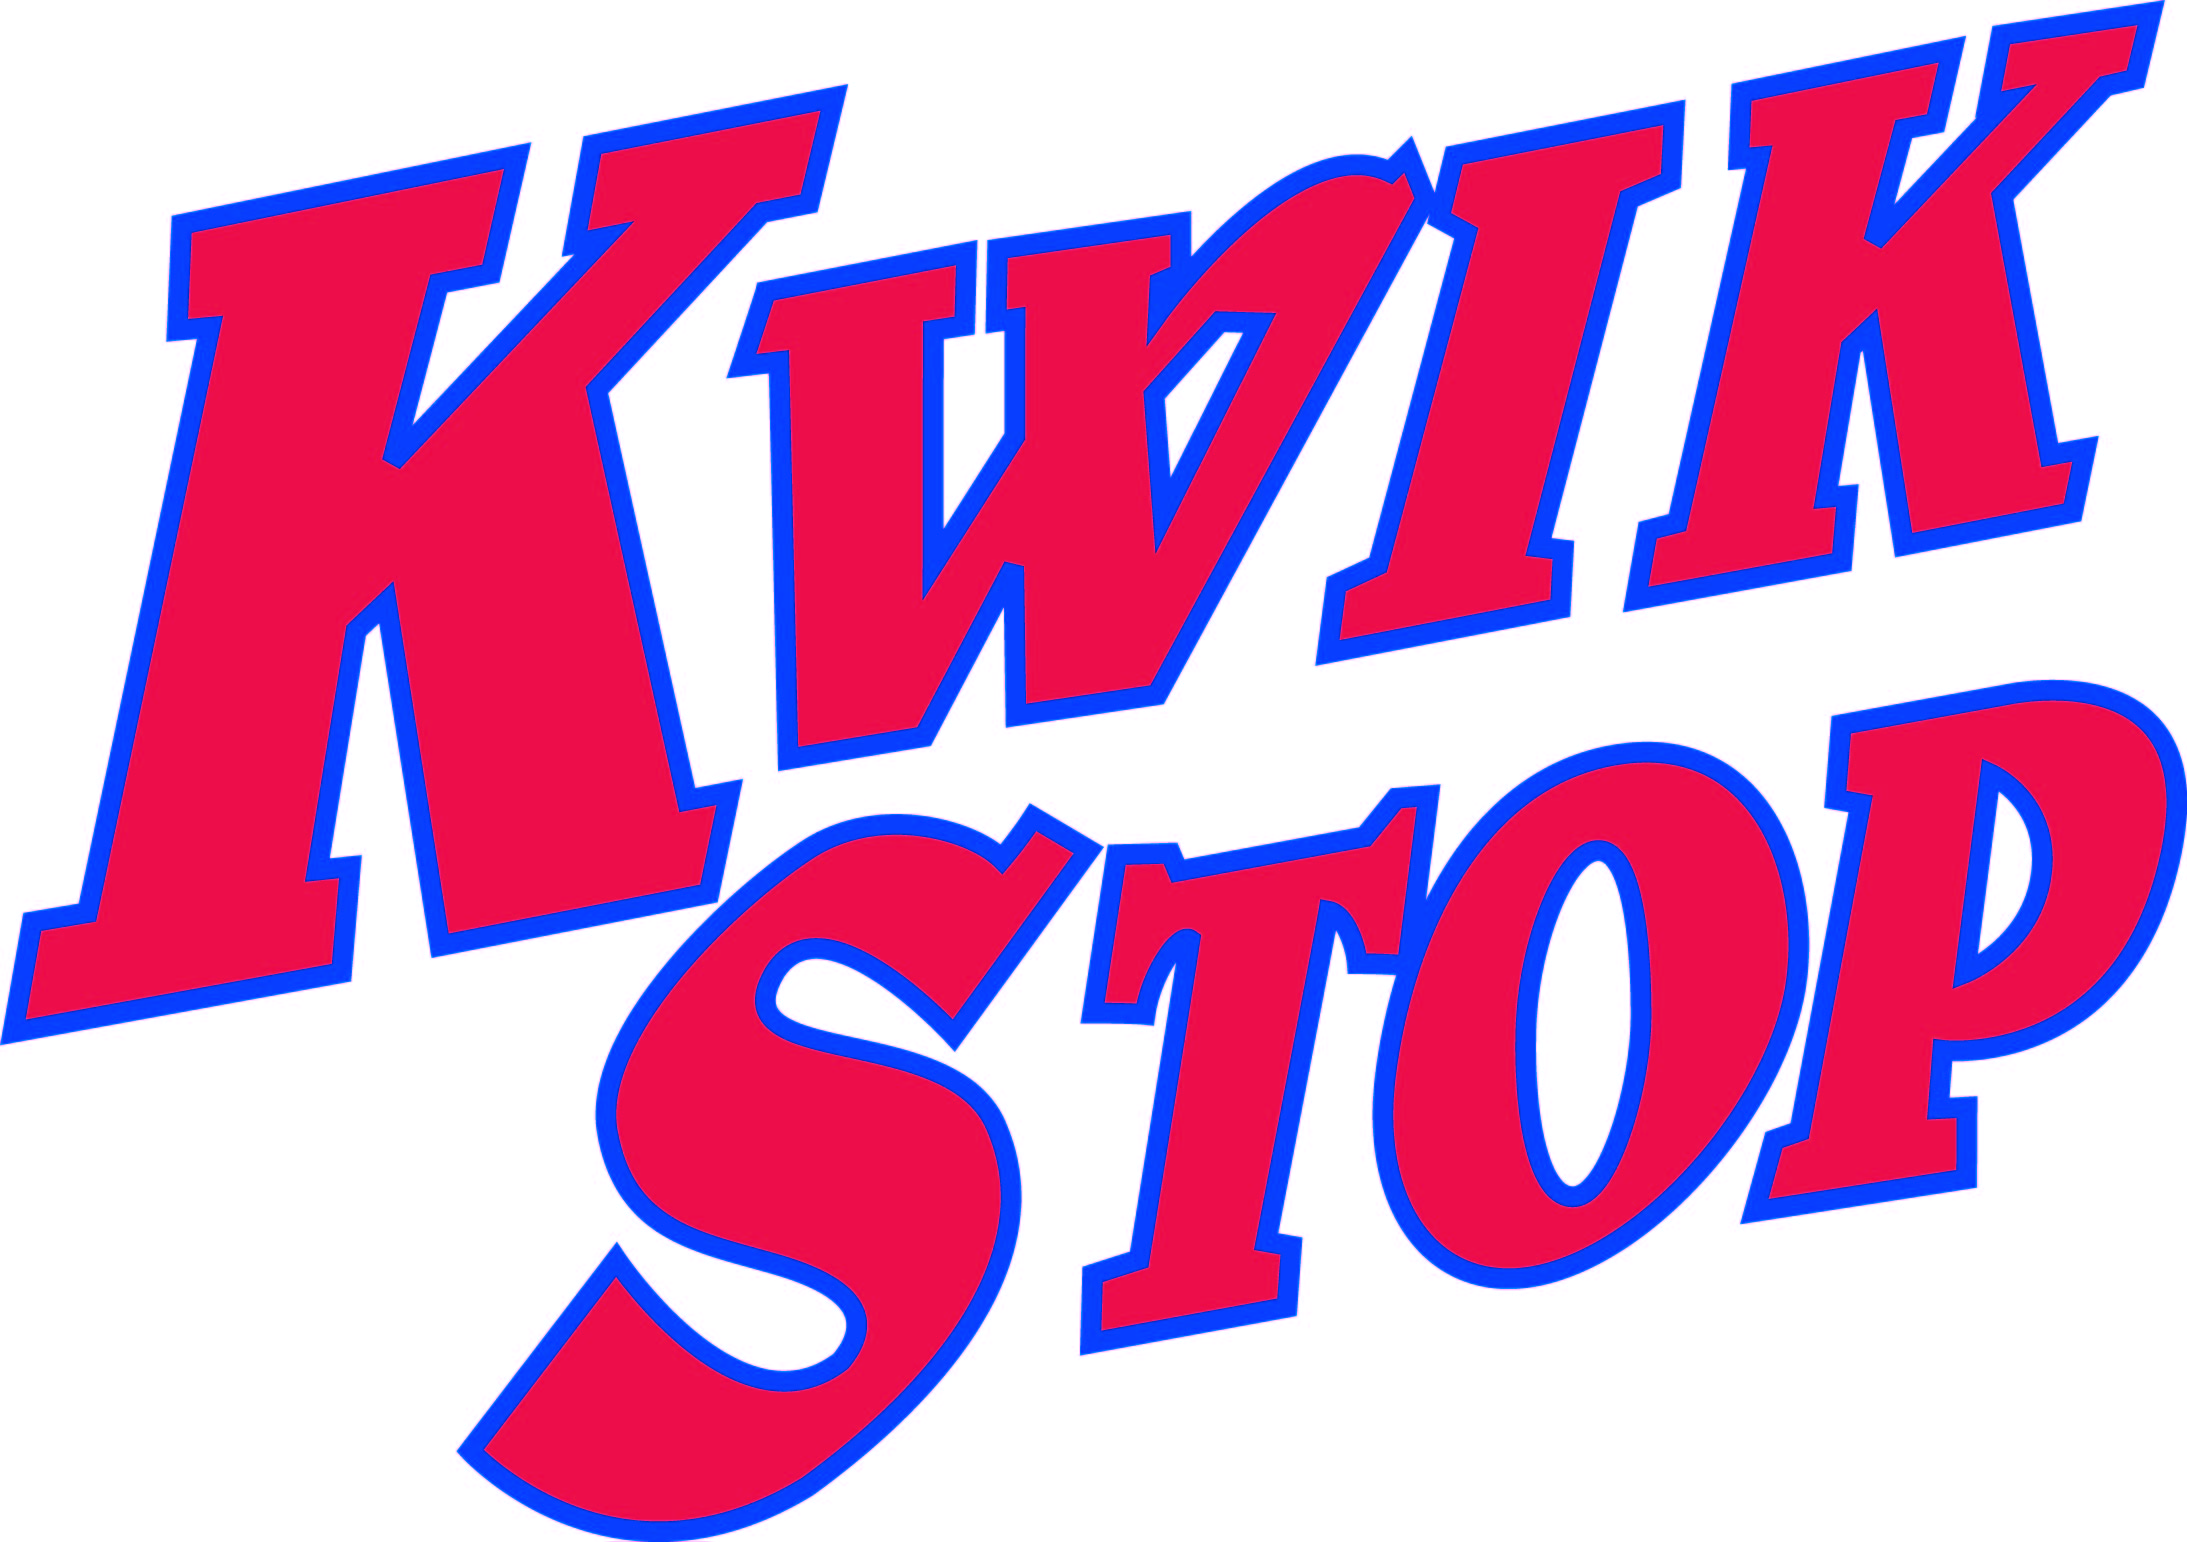 Kwik Stop